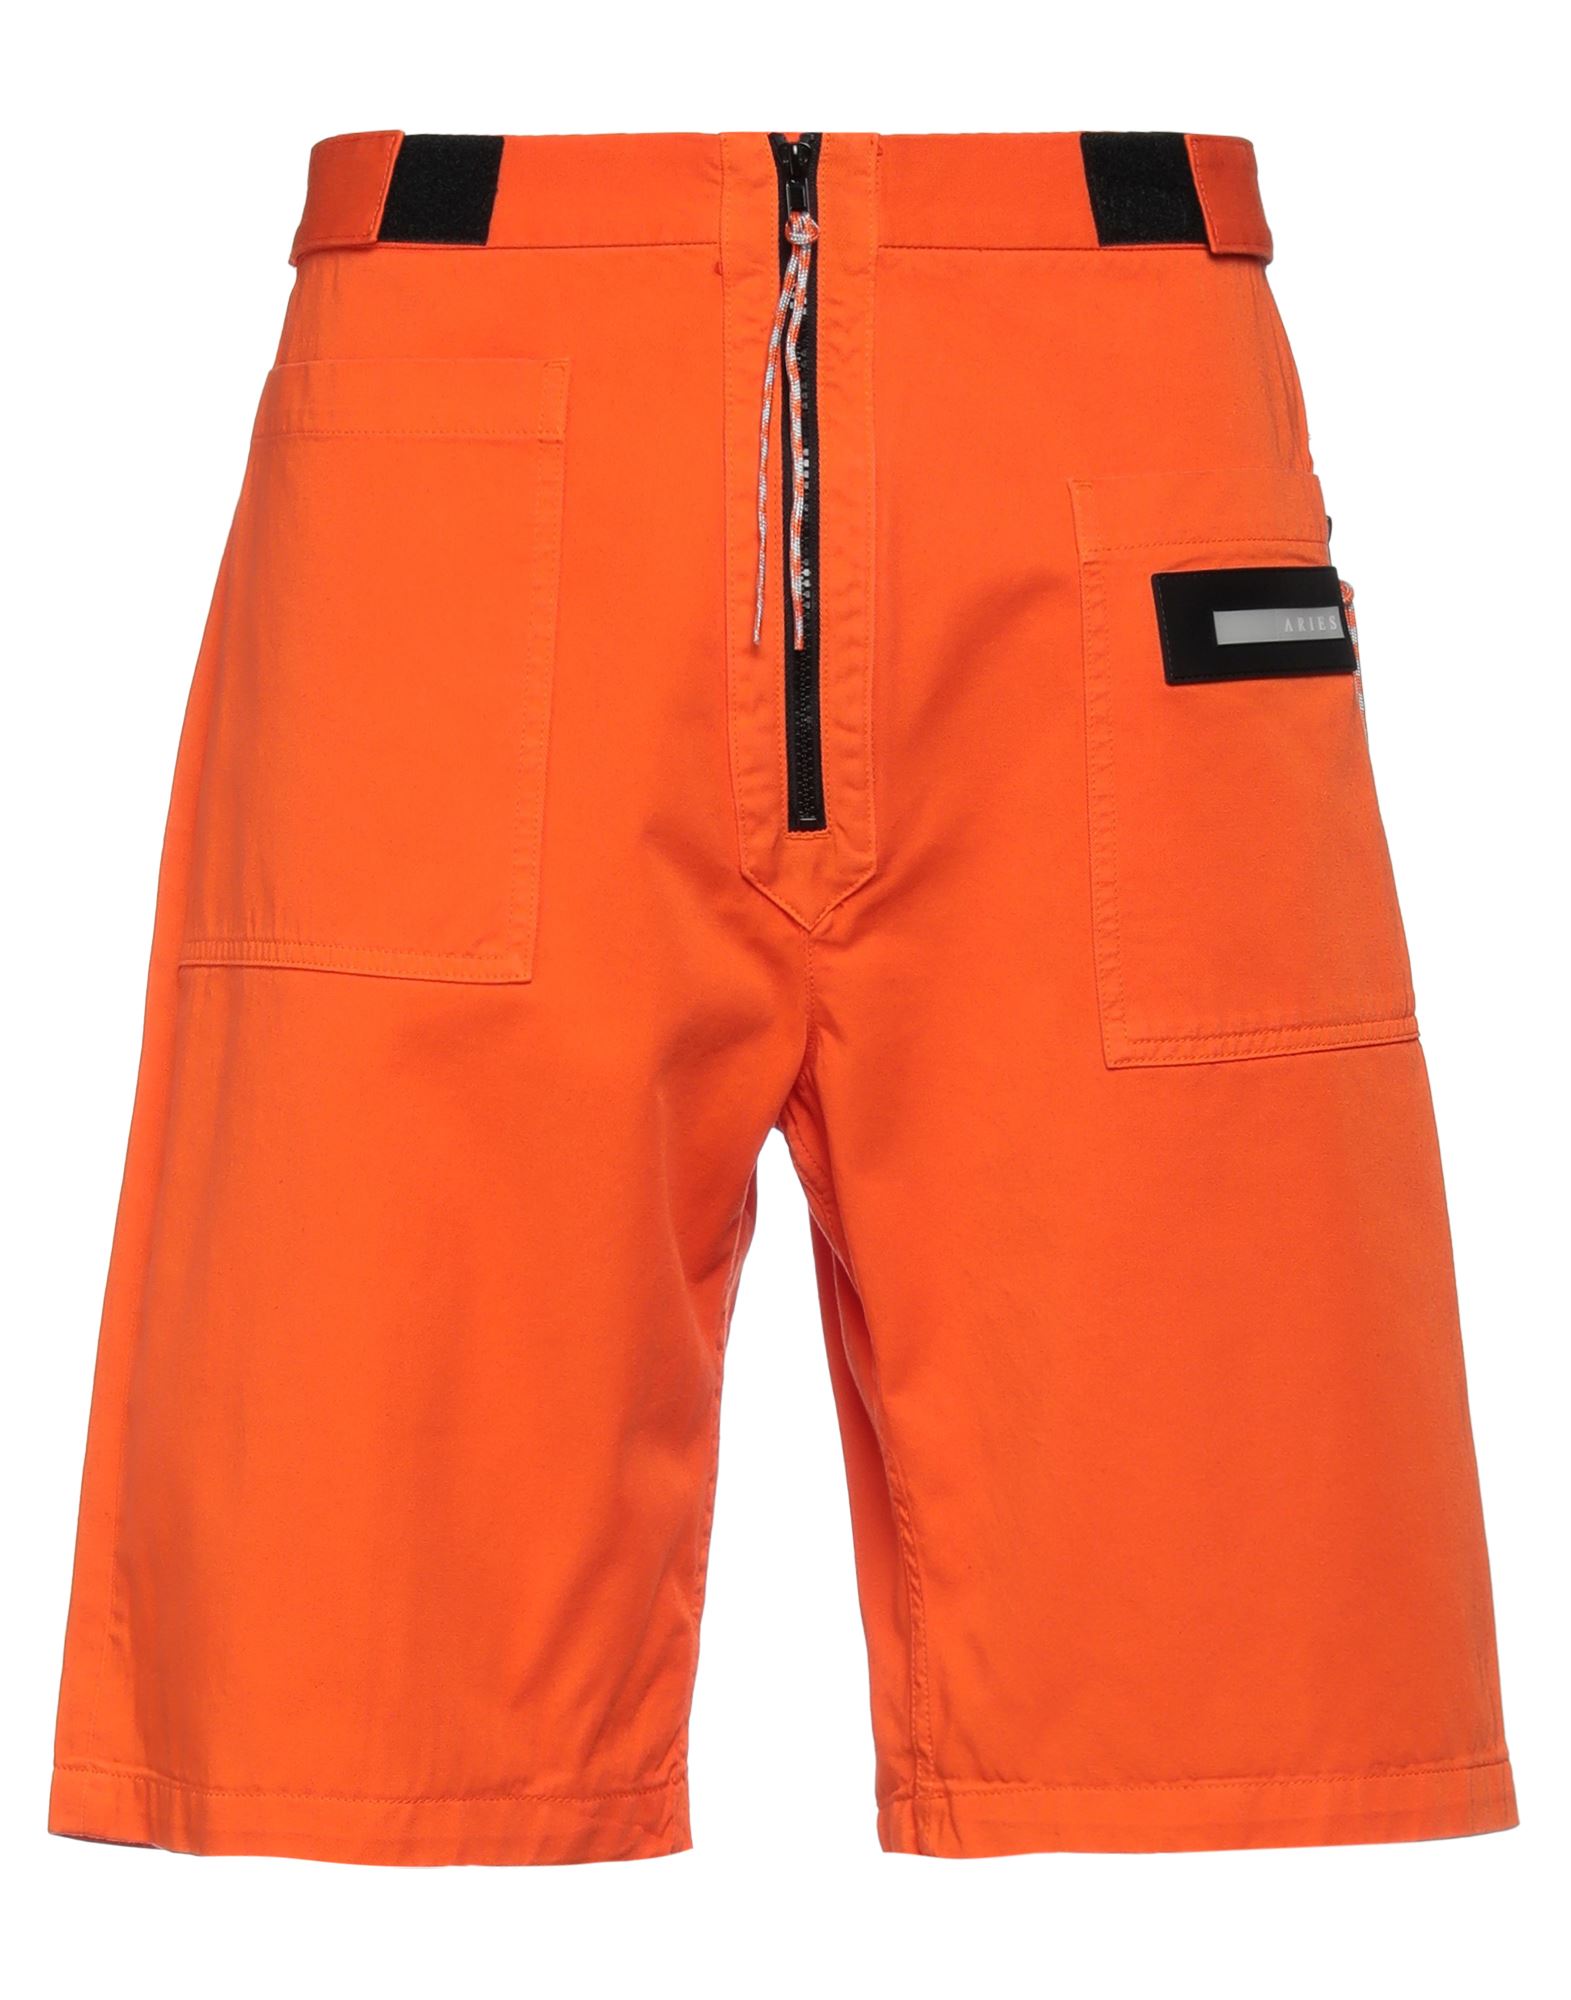 Aries Man Shorts & Bermuda Shorts Orange Size 30 Cotton